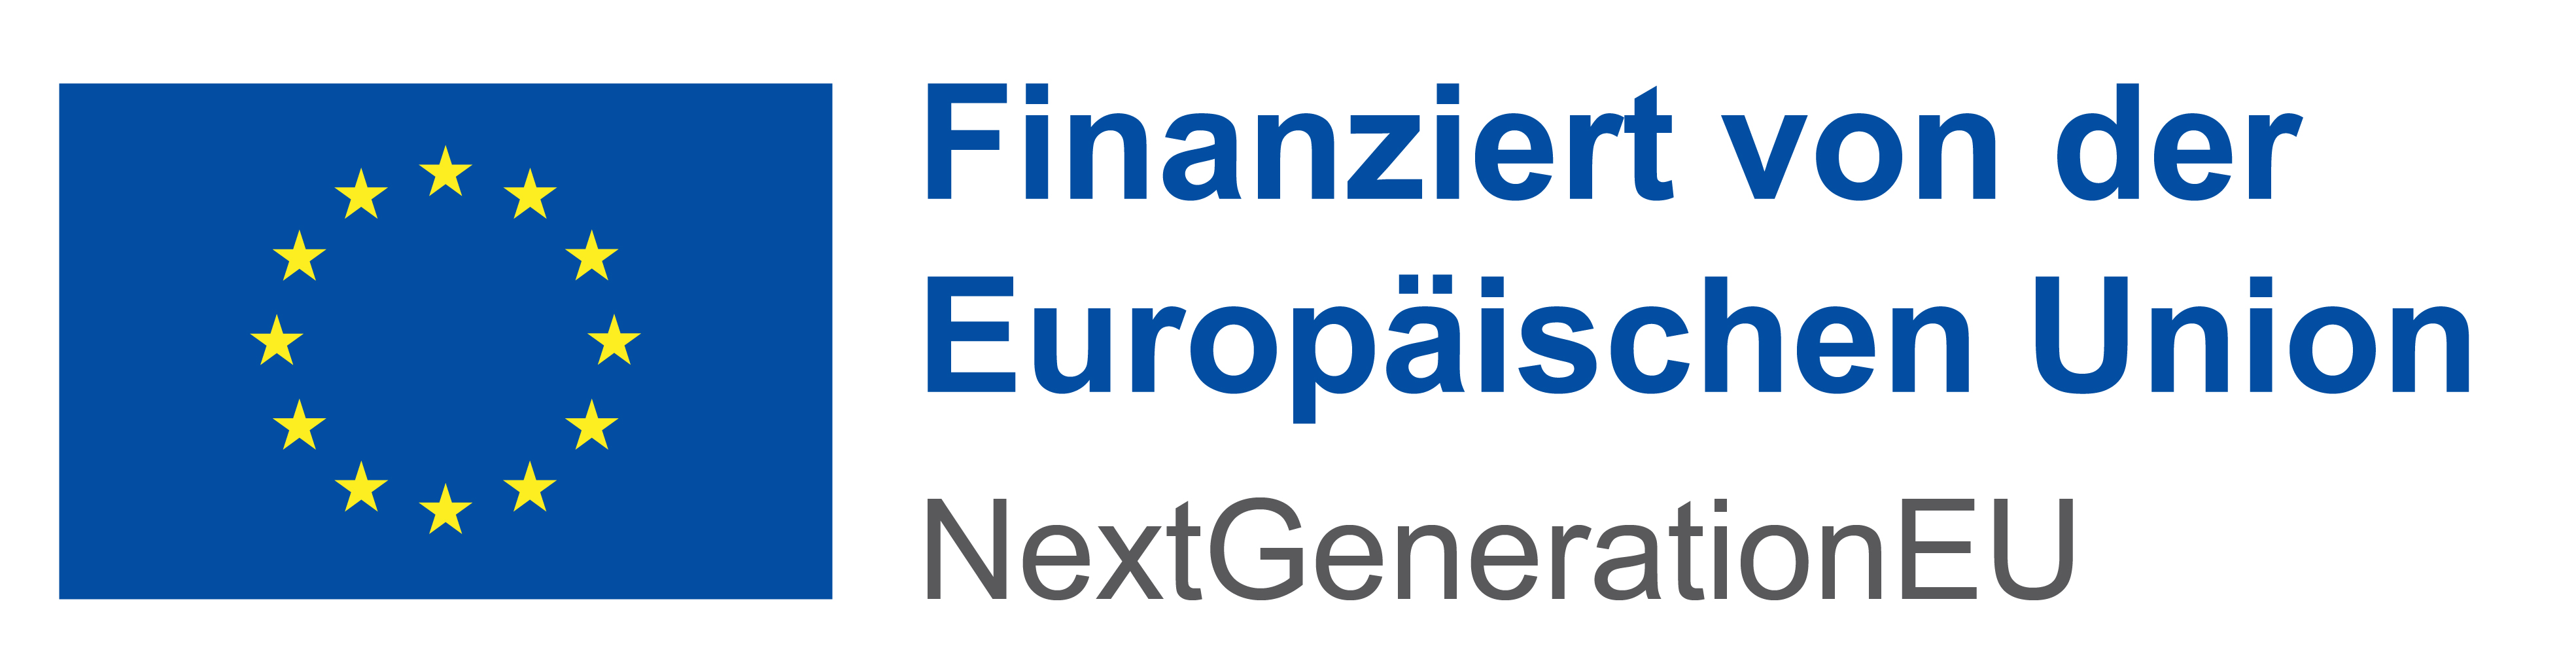 Logo: Finanziert von der Europäischen Union - NextGenerationEU